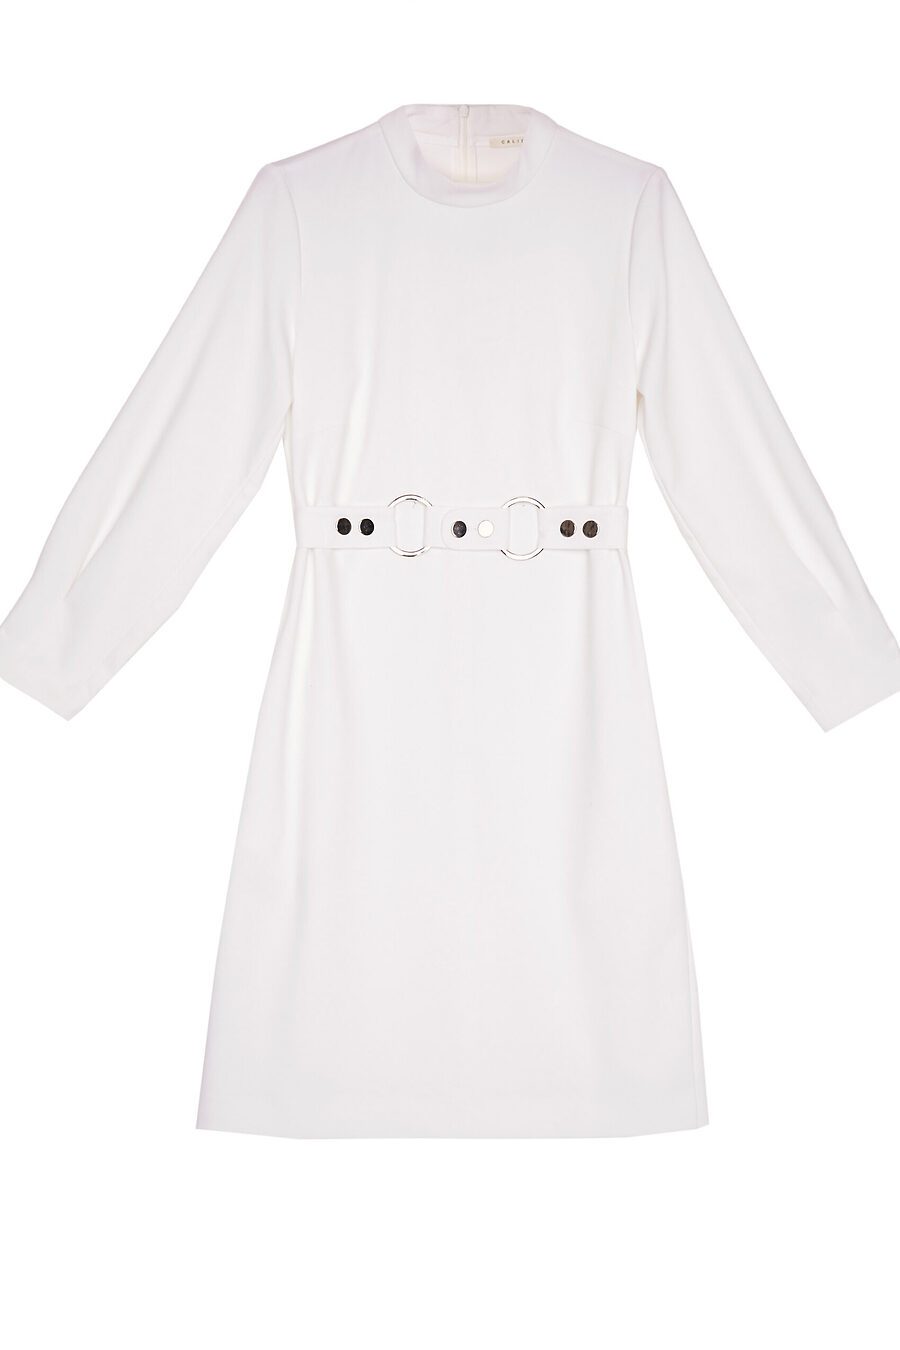 Платье для женщин CALISTA 741106 купить оптом от производителя. Совместная покупка женской одежды в OptMoyo